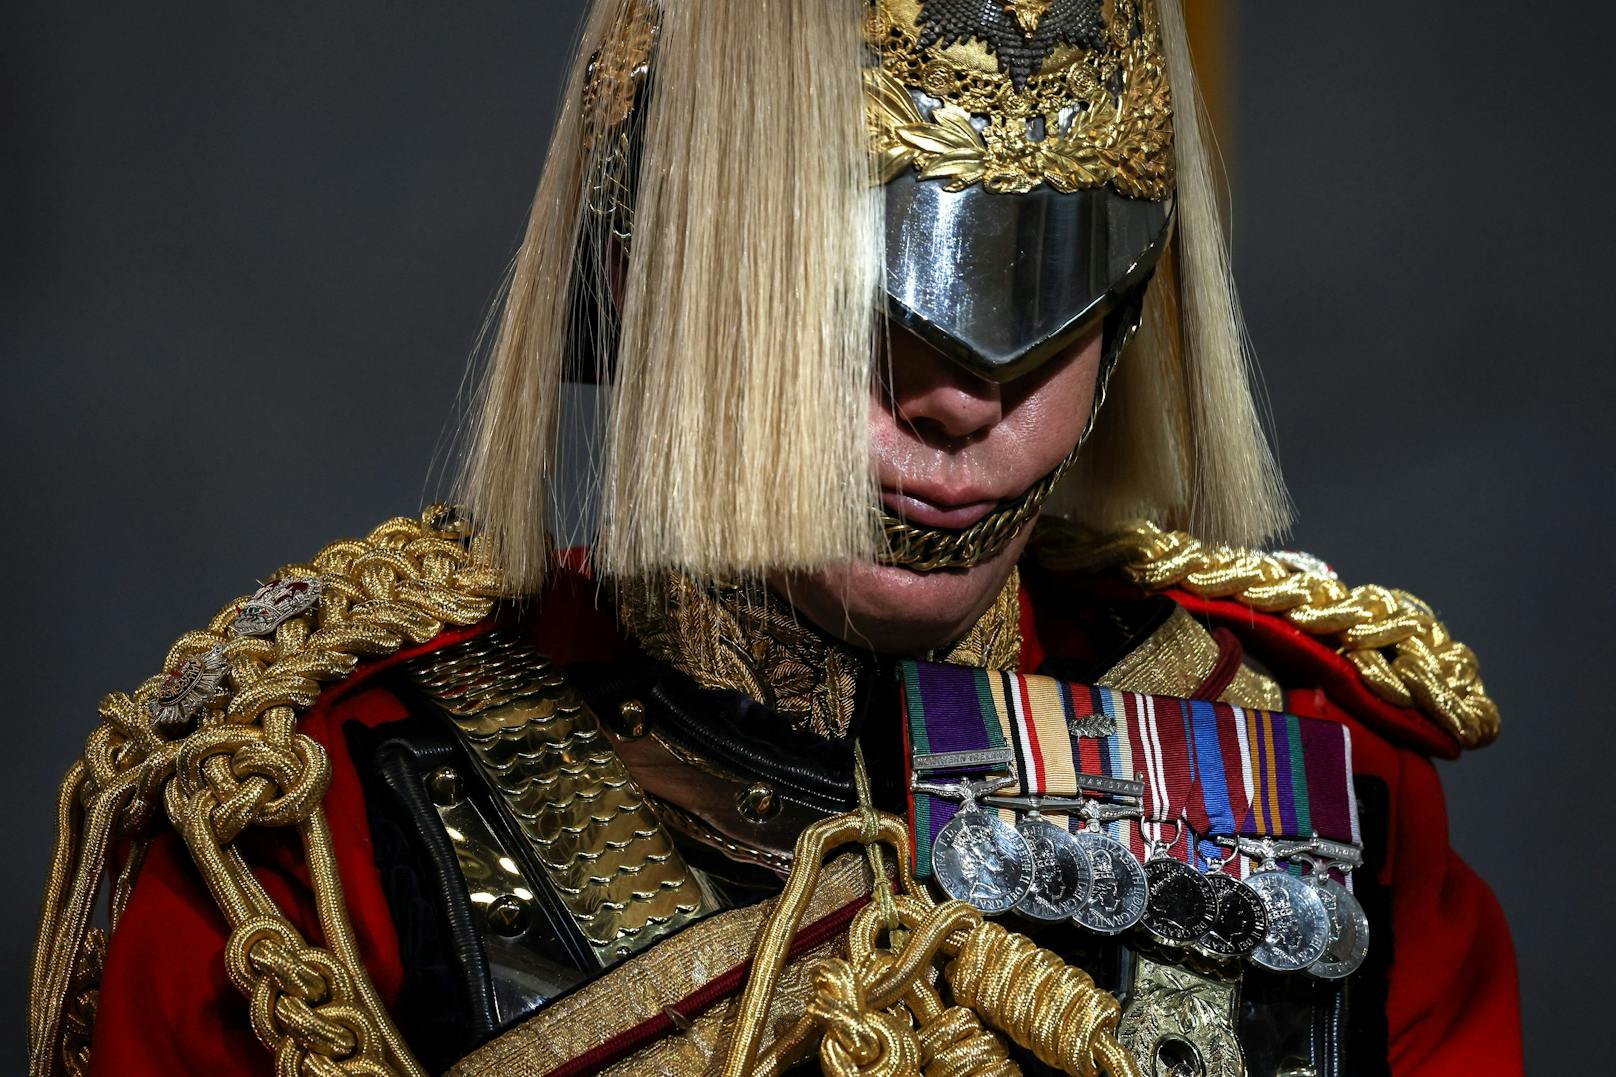 Ein Mitglied der königlichen Garde zeigt die besondere Uniform zu Ehren der verstorbenen Königin.